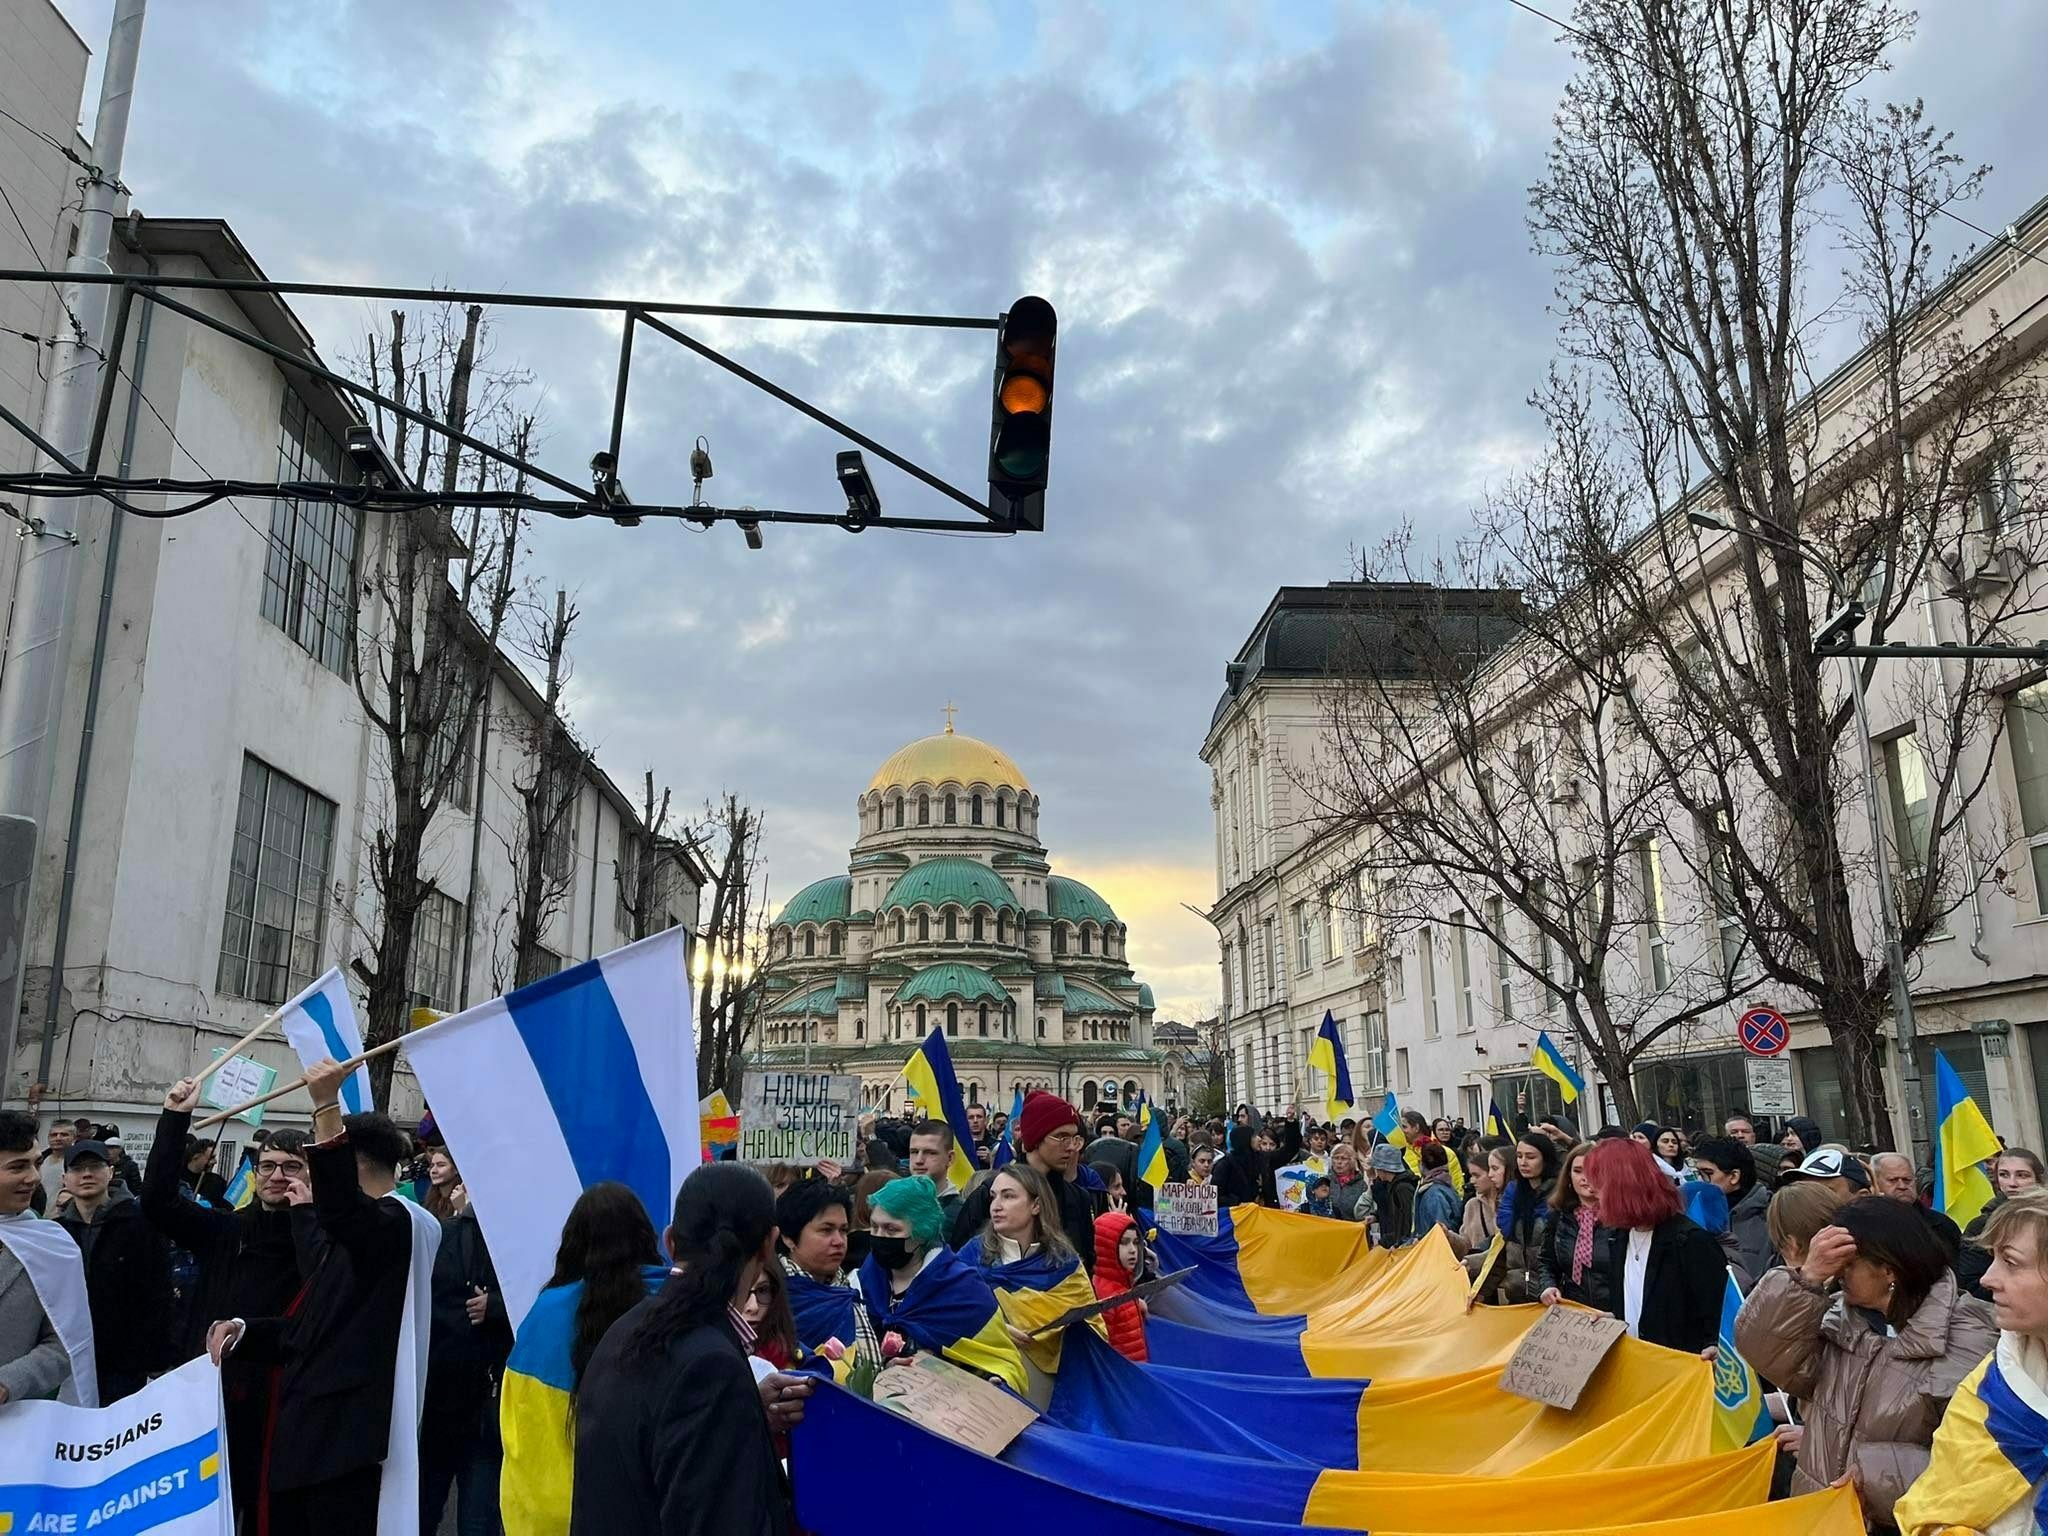 Спонтанно шествие се подготвя тази вечер в центъра на София.
Шествието